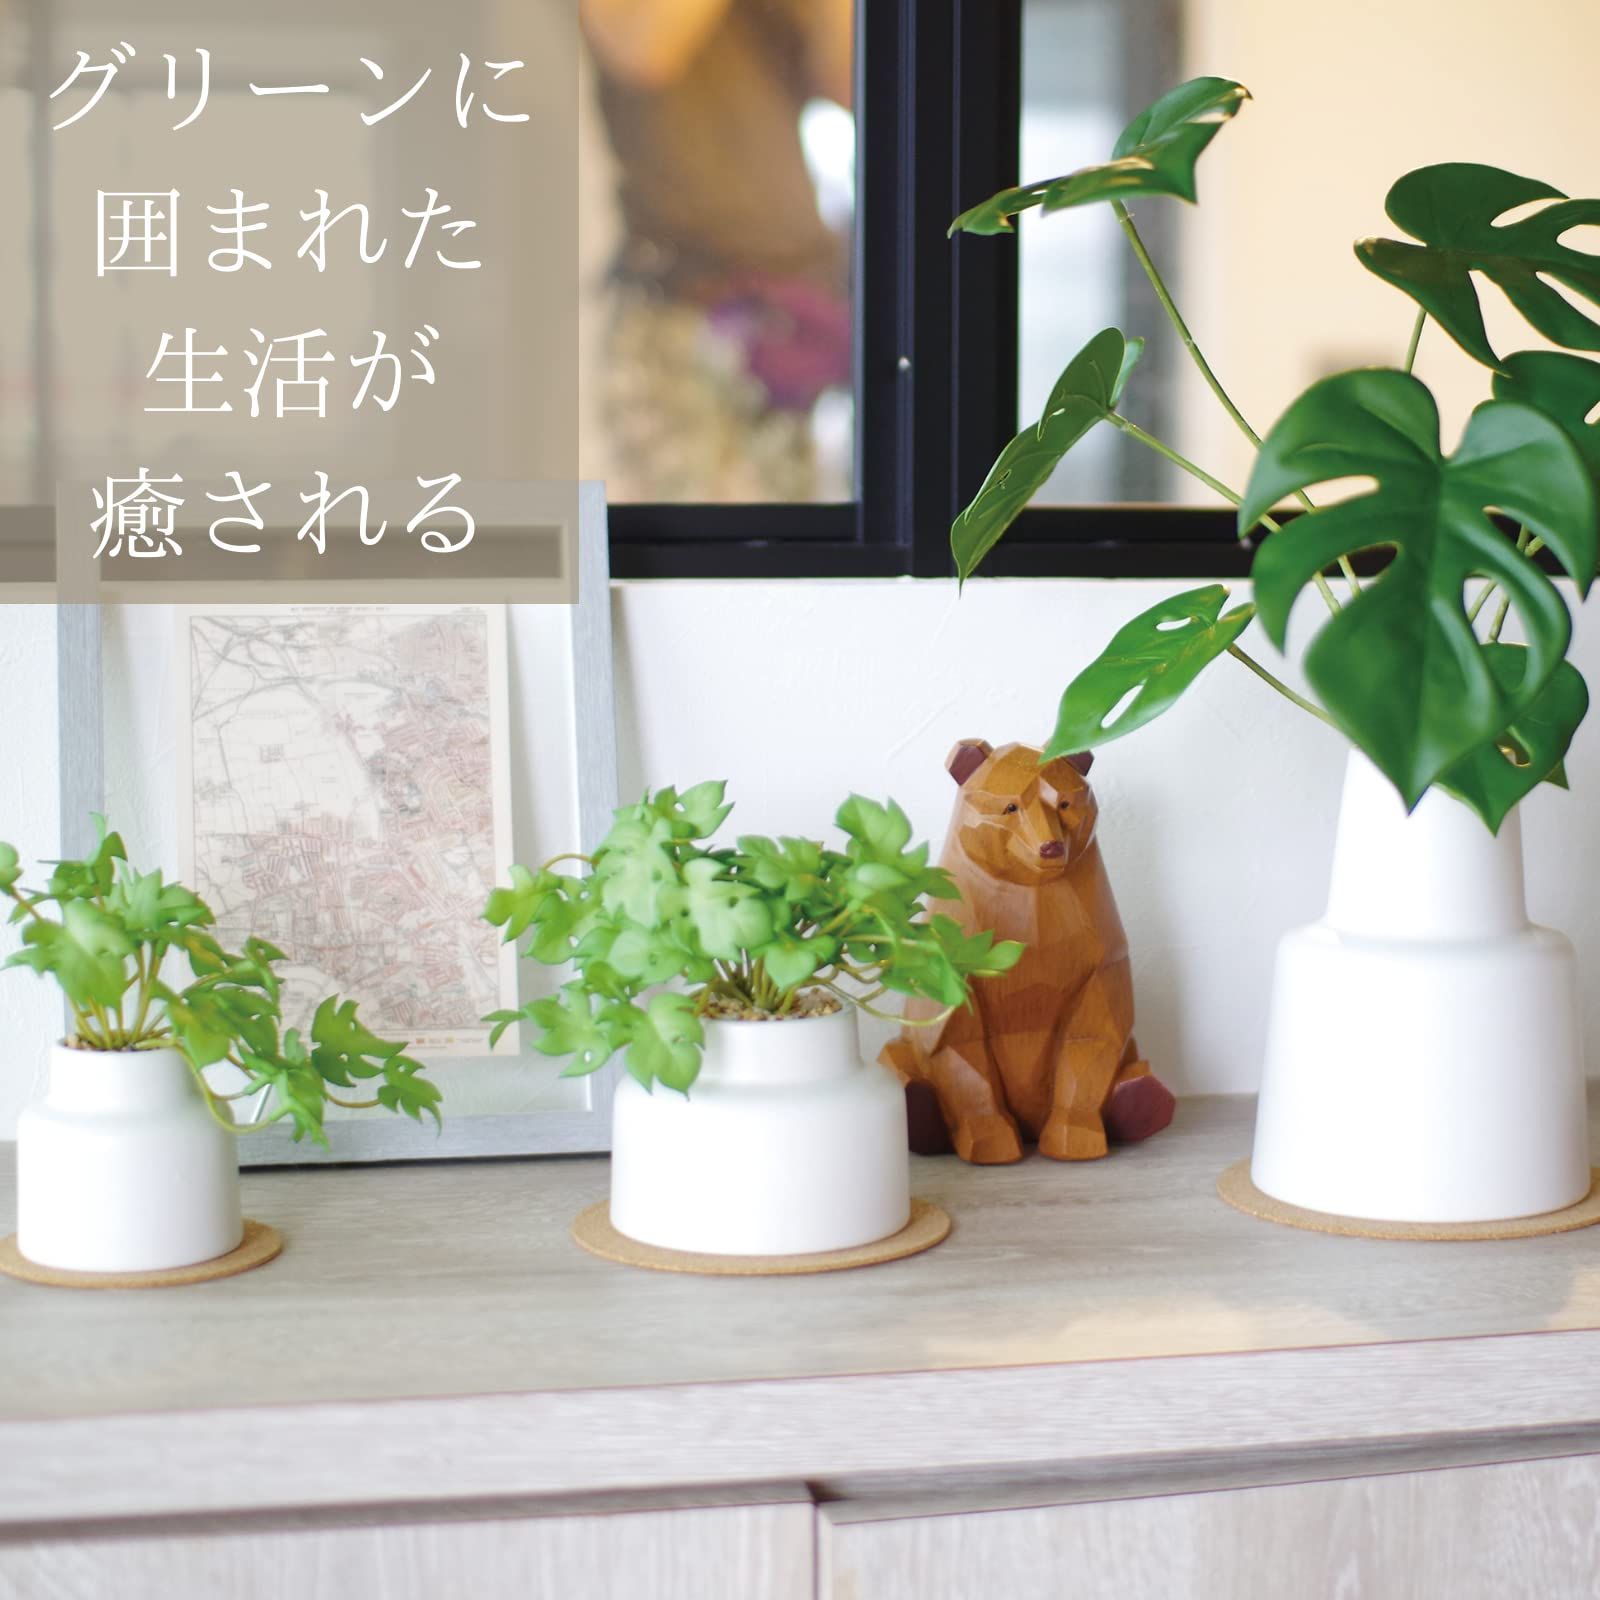 【人気商品】キシマ kishima 人工観葉植物 フェイクグリーン 人工植物 枯